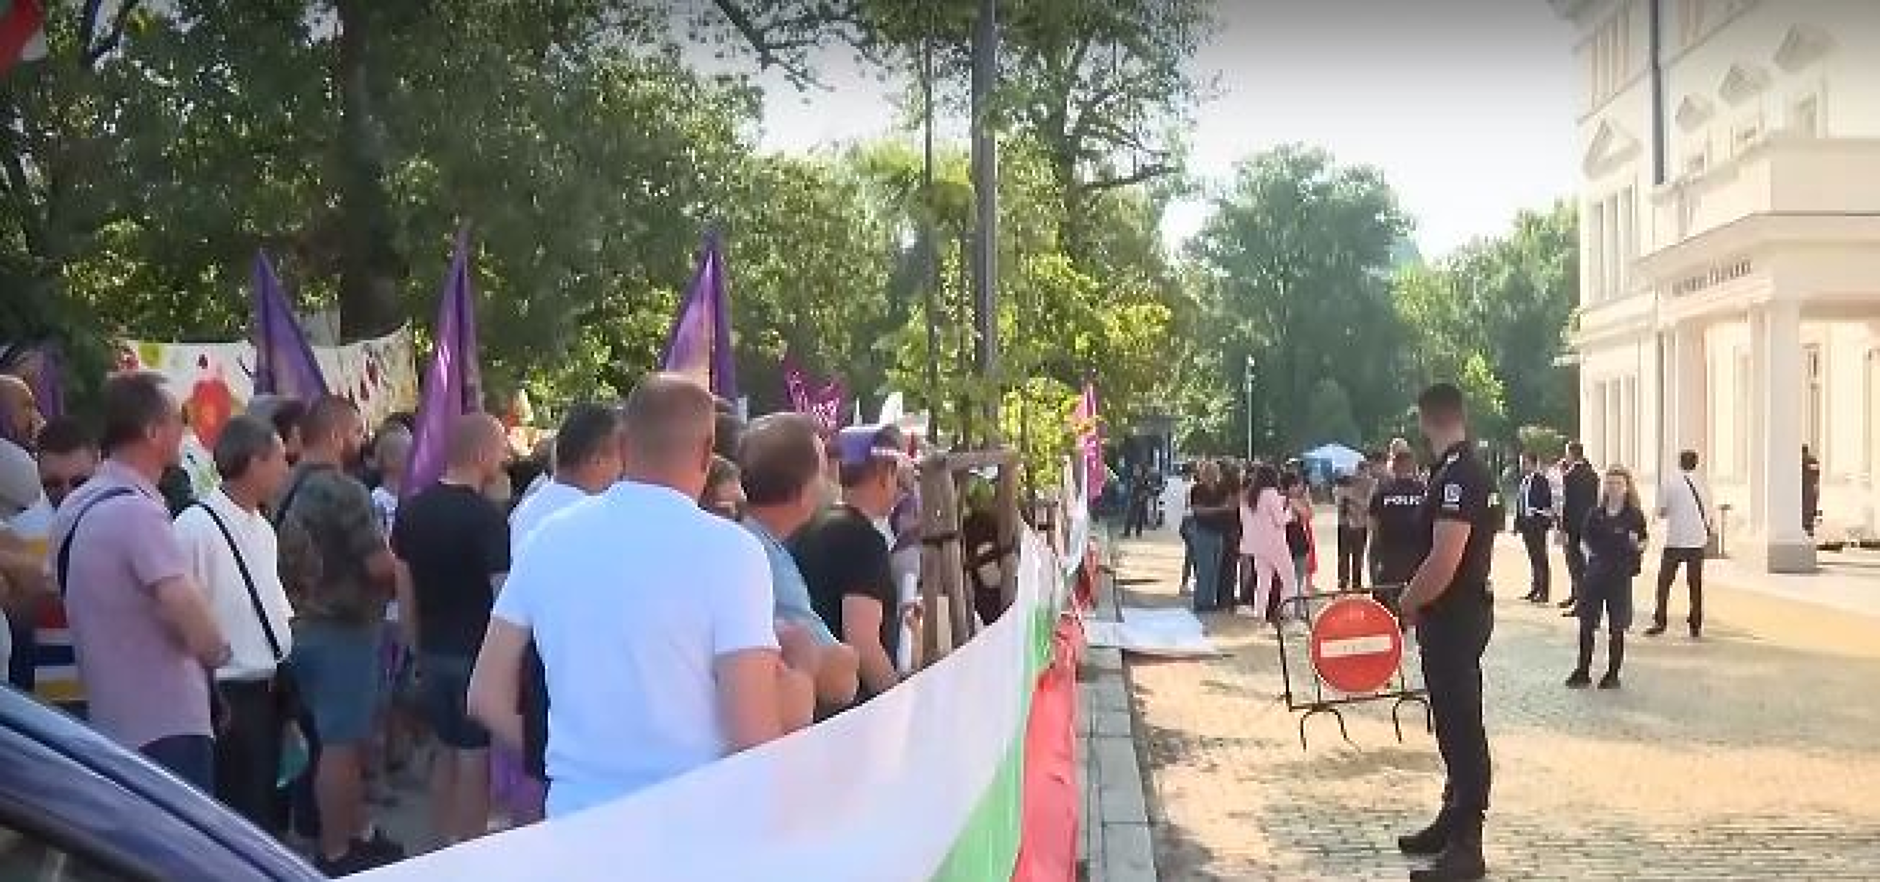 Работещи в БНР, НОИ, НАП и културни дейци протестират пред парламента